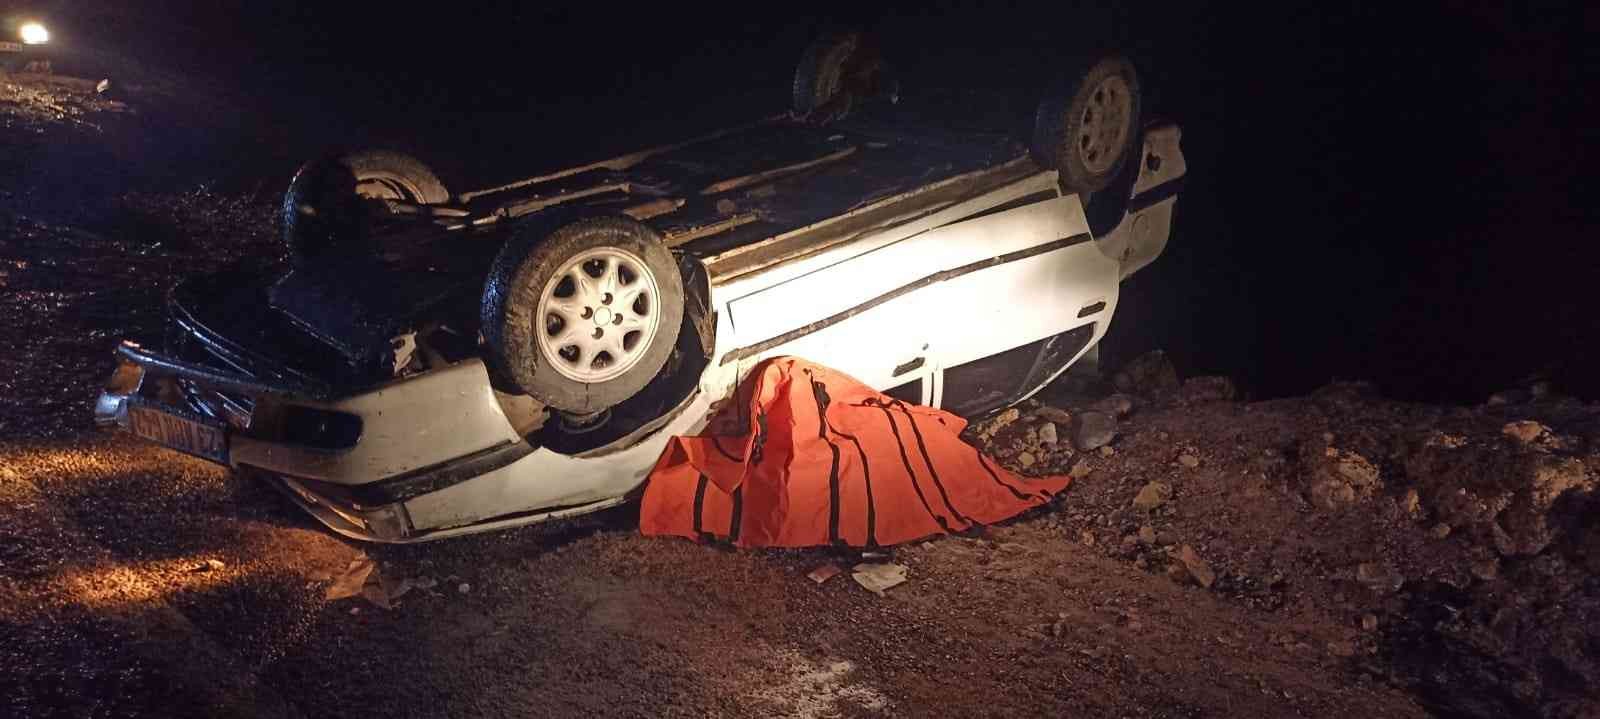 Otomobil şarampole yuvarlandı, güvenlik korucusu hayatını kaybetti